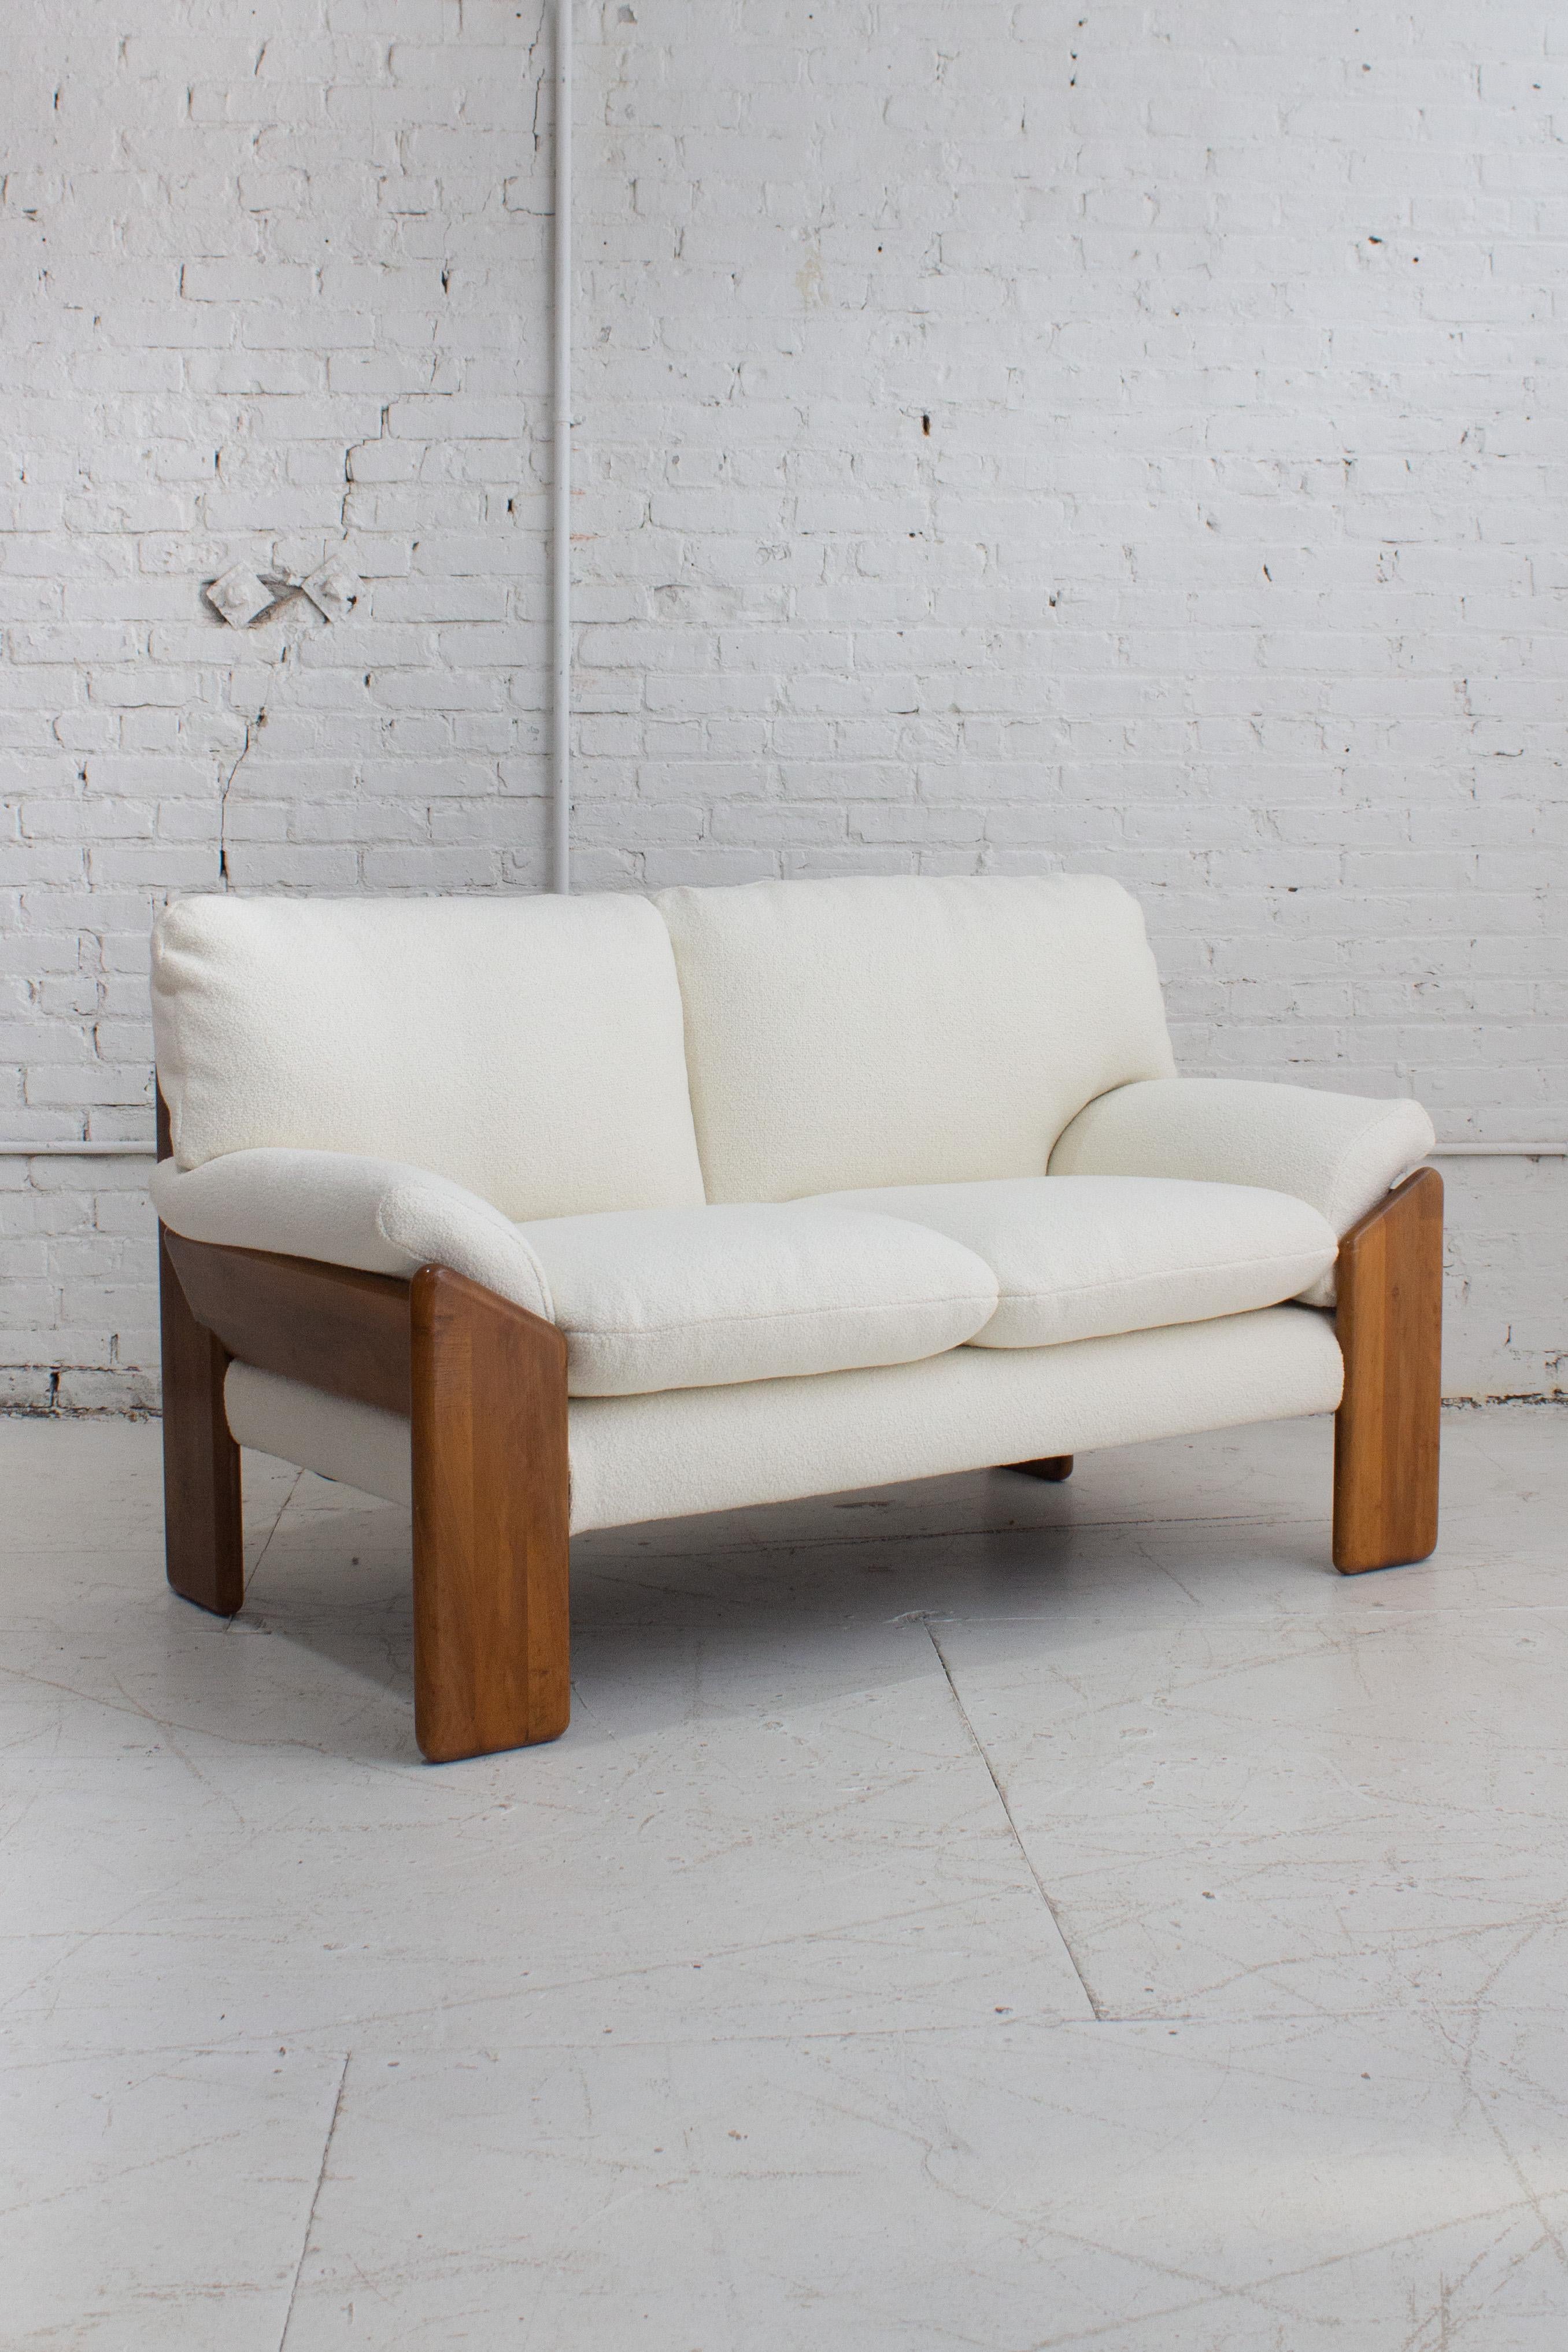 Das zweisitzige Sofa 'Sapporo' wurde von Mario Marenco für Mobil Girgi entworfen. Ein Massivholzrahmen hält sechs abnehmbare Kissen. Neu gepolstert mit cremefarbenem, strukturiertem Stoff. Gestempelt 